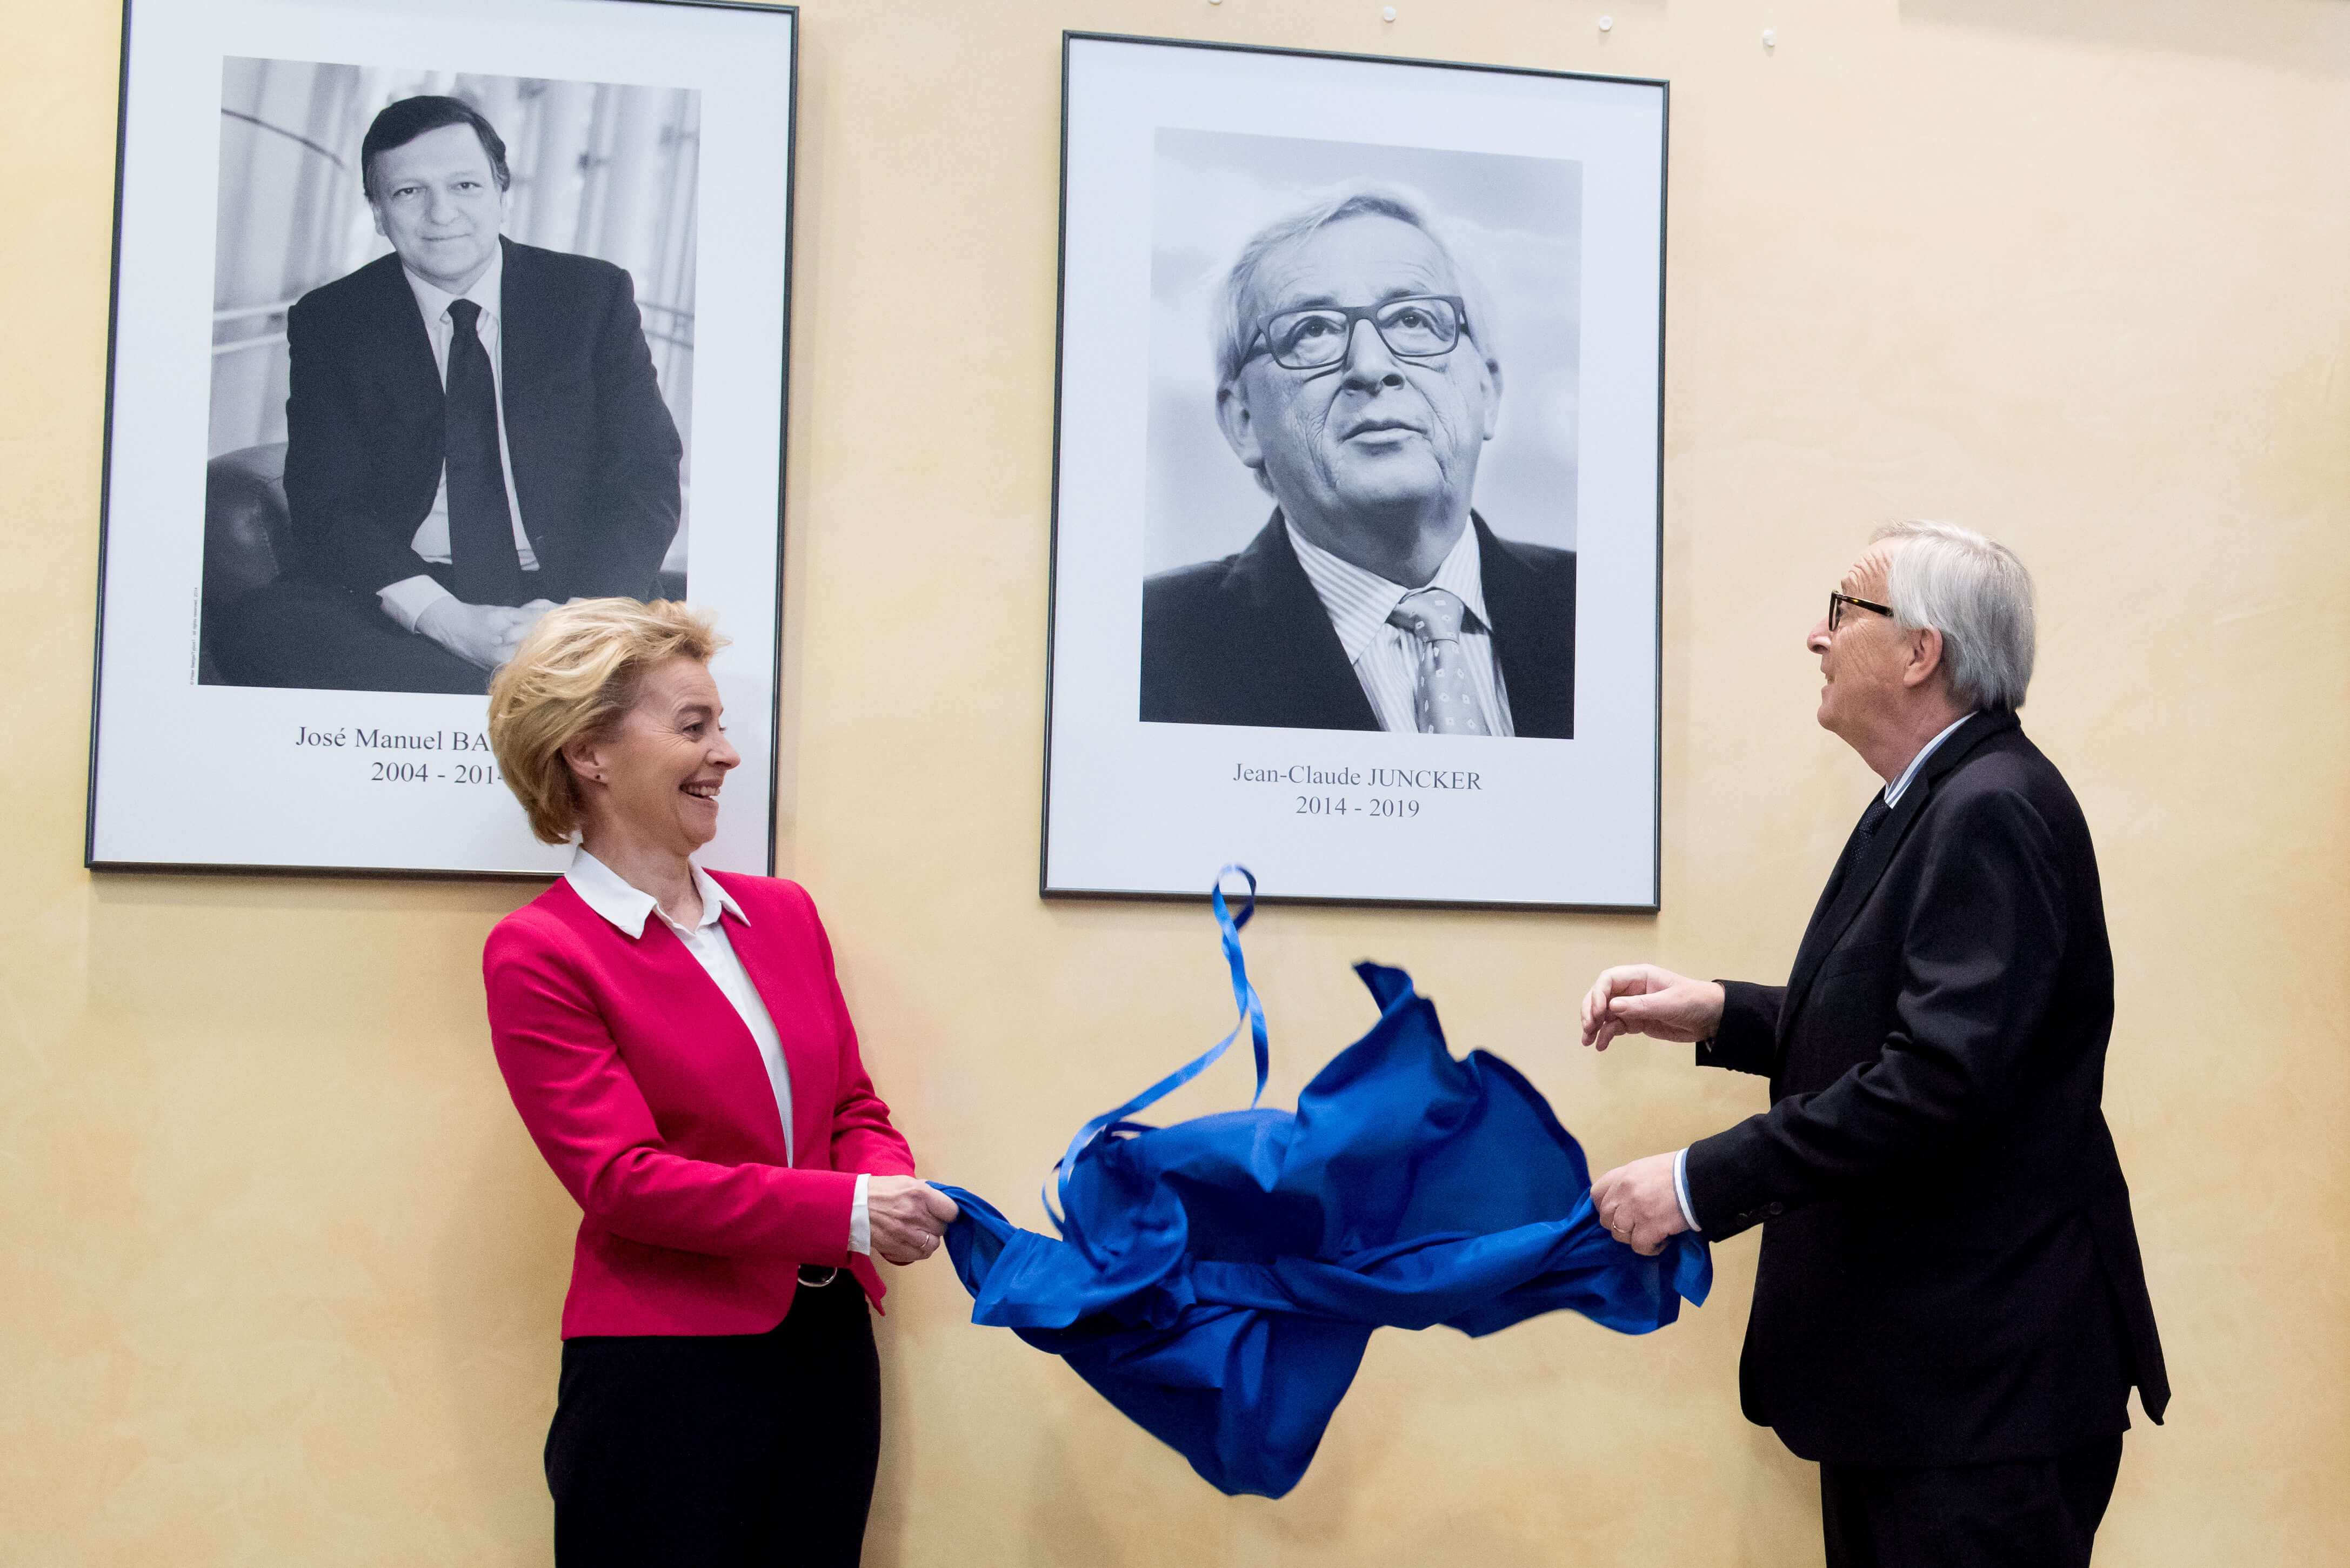 Ursula von der Leyen en haar voorganger Jean-Claude Juncker tijdens de overdrachtsceremonie op 3 december 2019. © European Union 2019